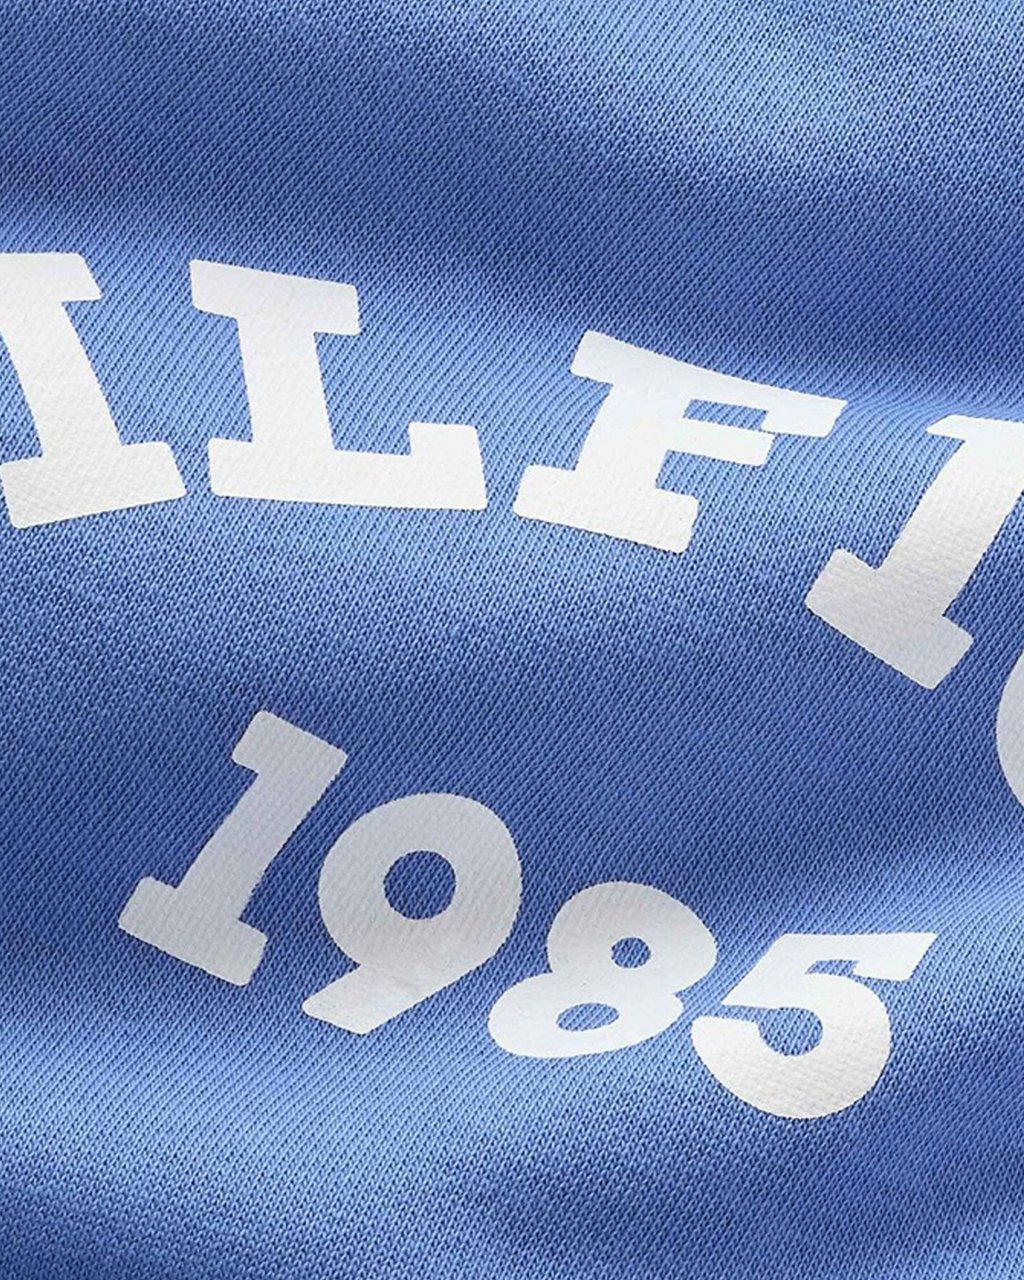 Tommy Hilfiger 1985 Sweater Blauw